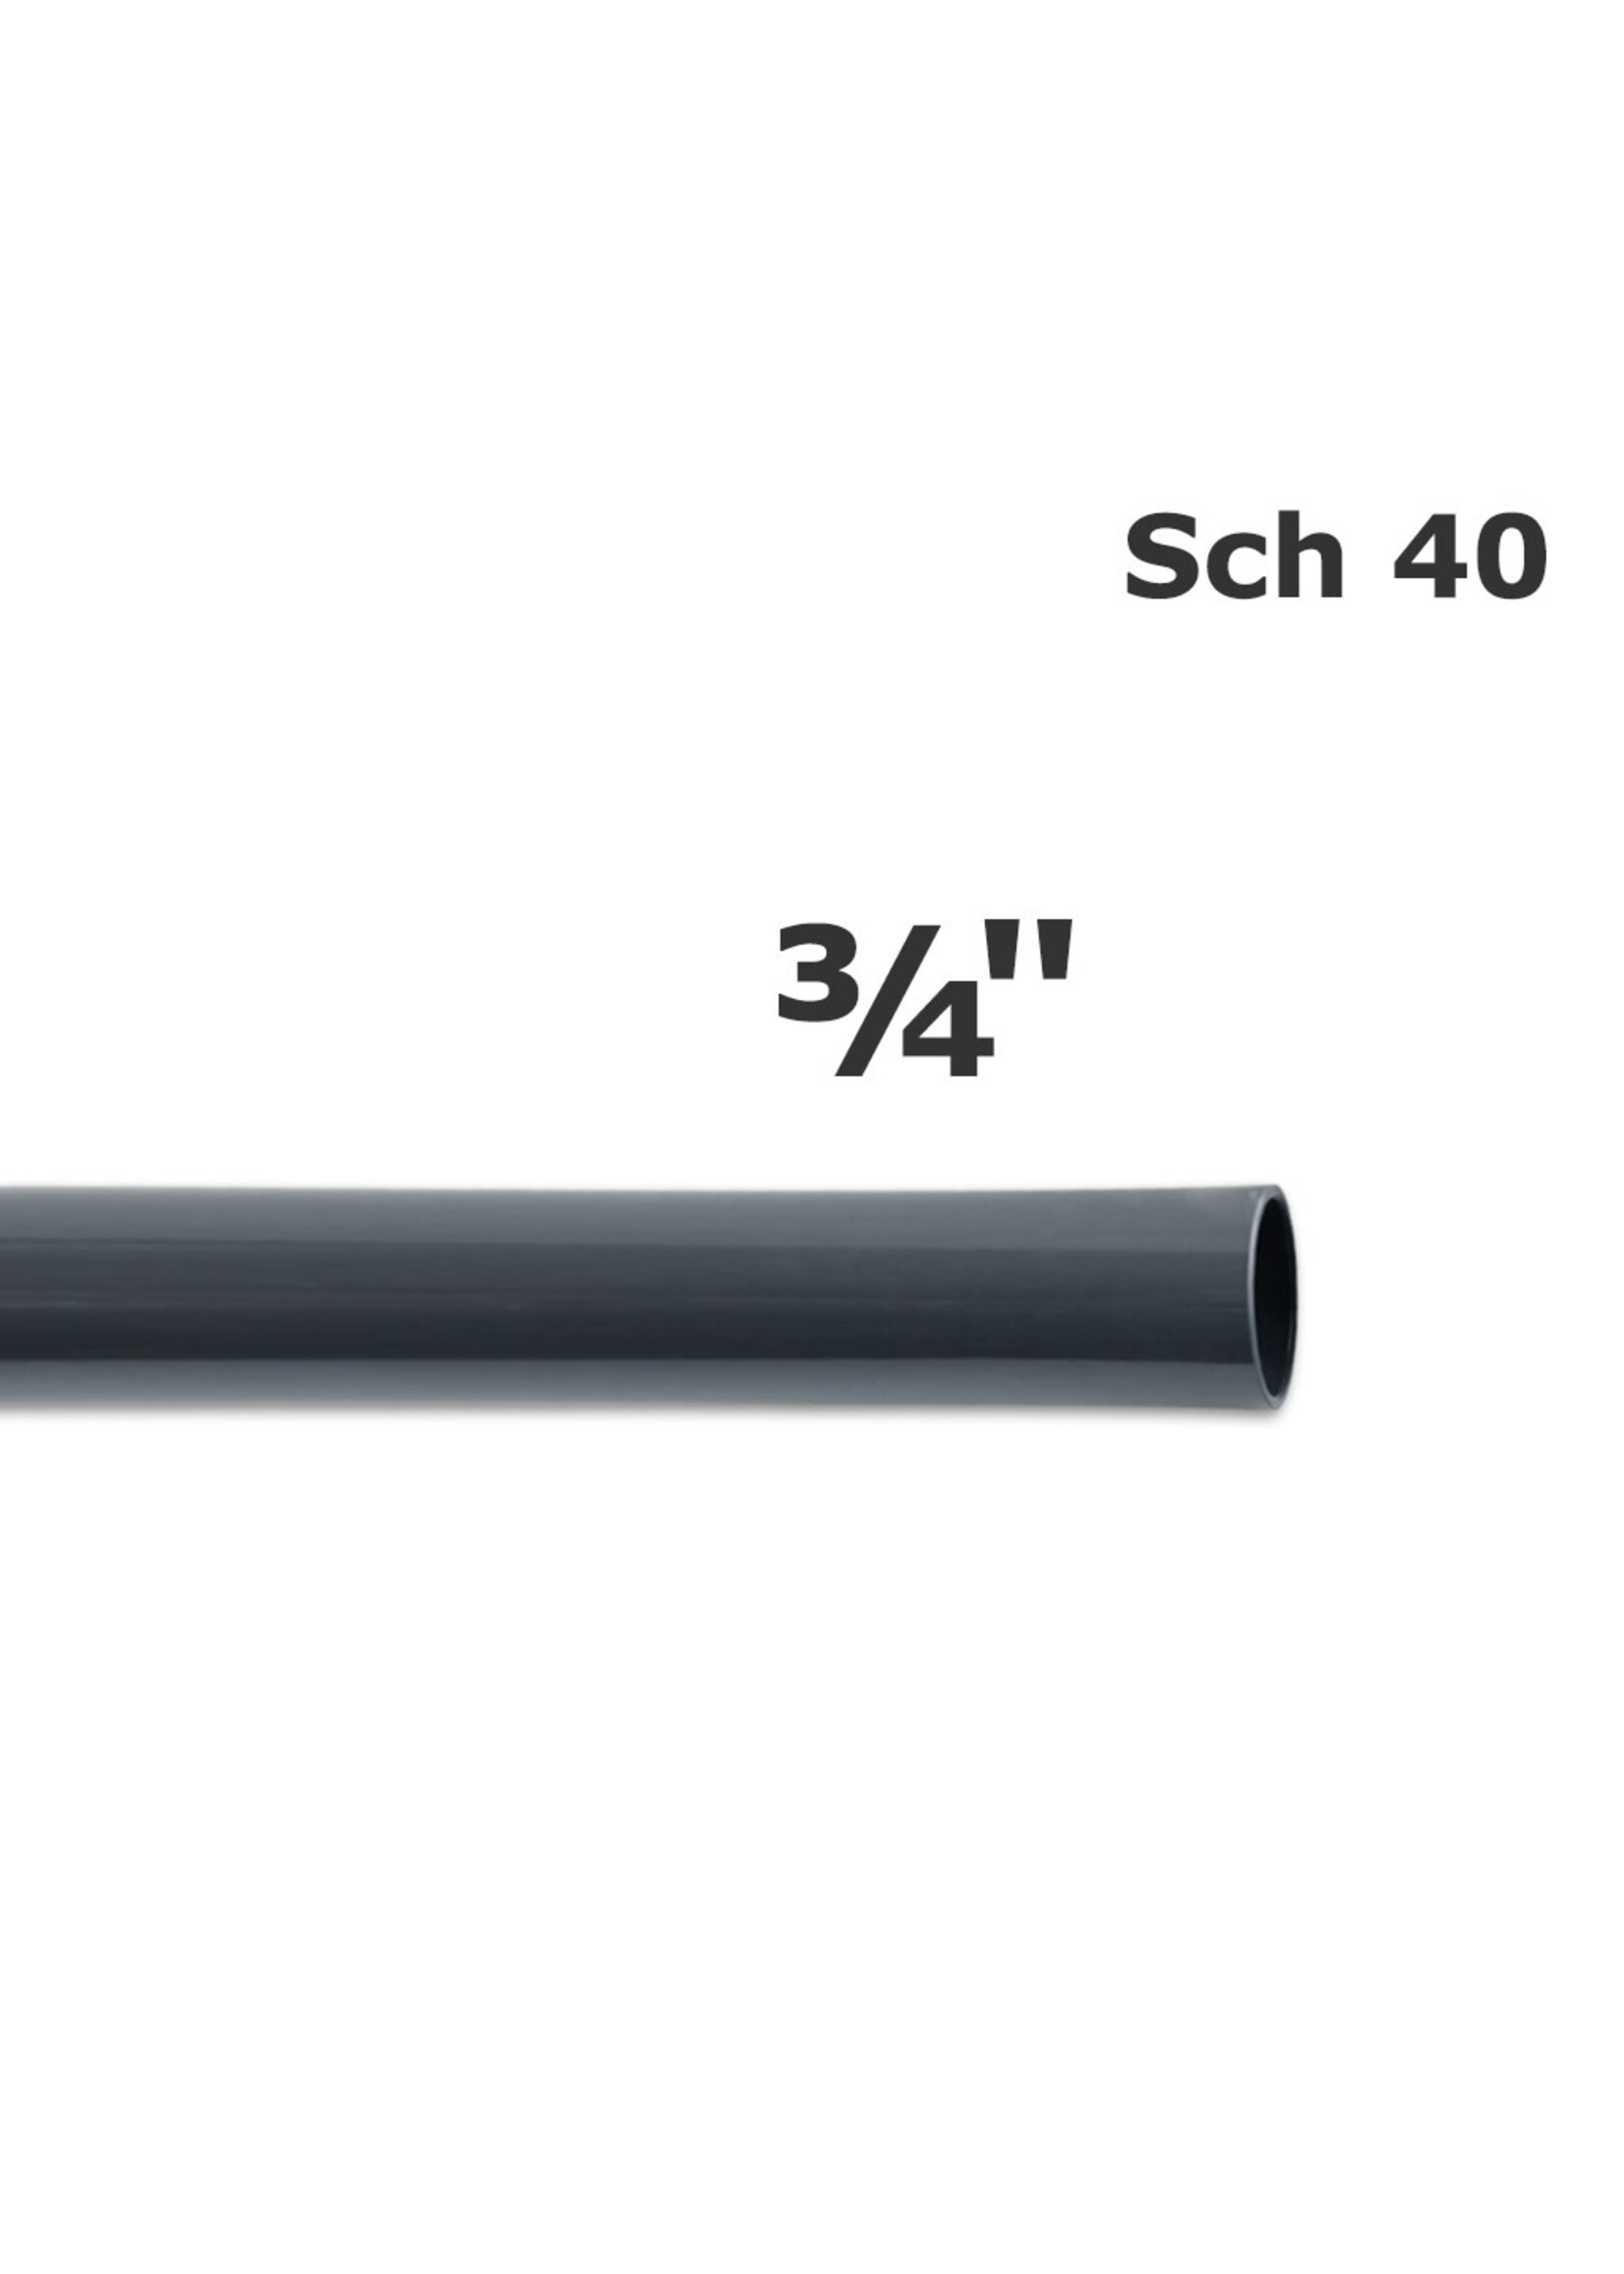 TUBO PVC SCH 40- 3/4" GRIS (76 G0075)